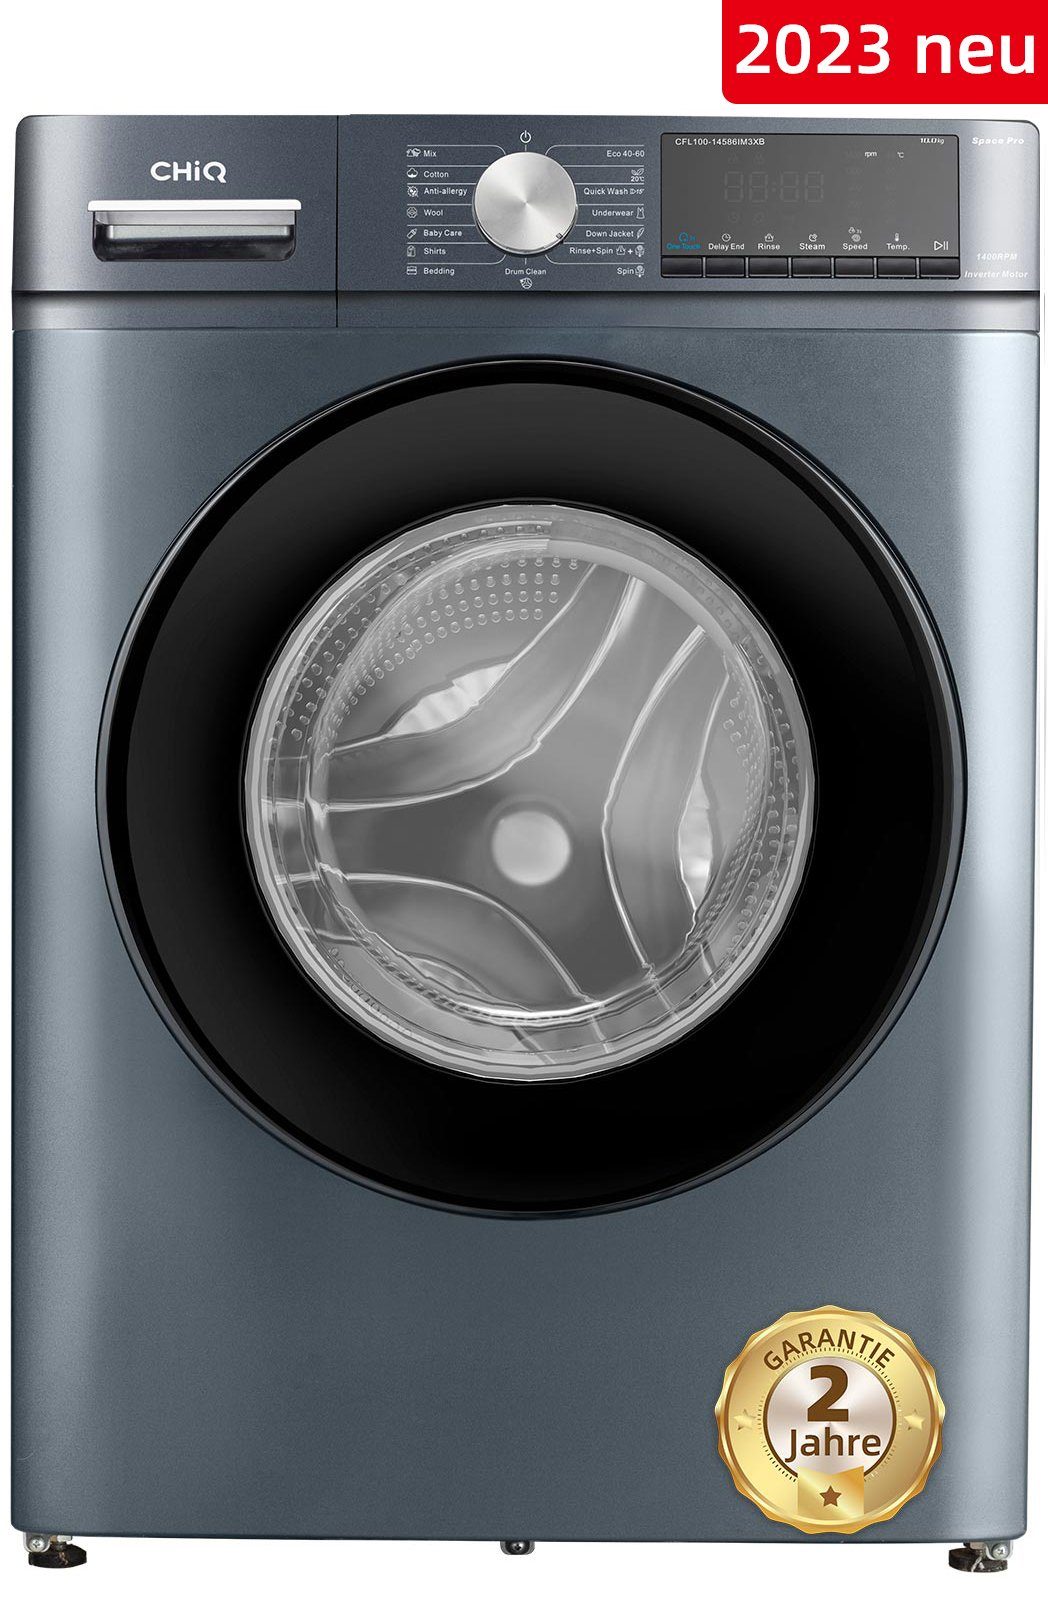 CHiQ Waschmaschine Kindersicherung Dampfwäsche, kg, U/min, 1400 Inverter-Motor, 10 CFL100-14586IM3XB, Schnellreinigung